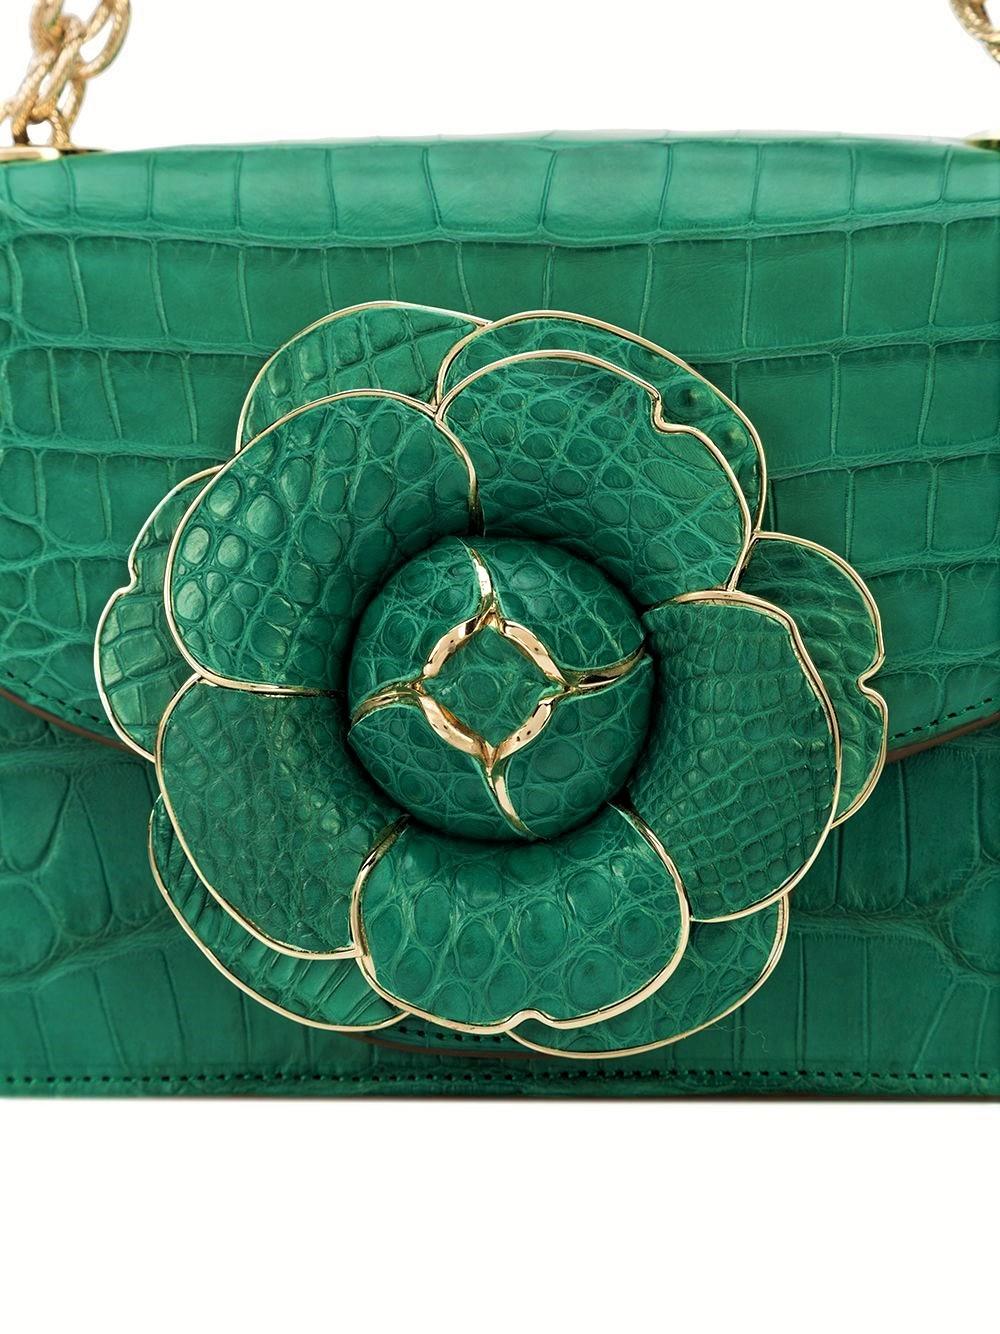 New $8999 Oscar De La Renta Emerald Green Alligator Tro Bag W/ Box & Tags  2